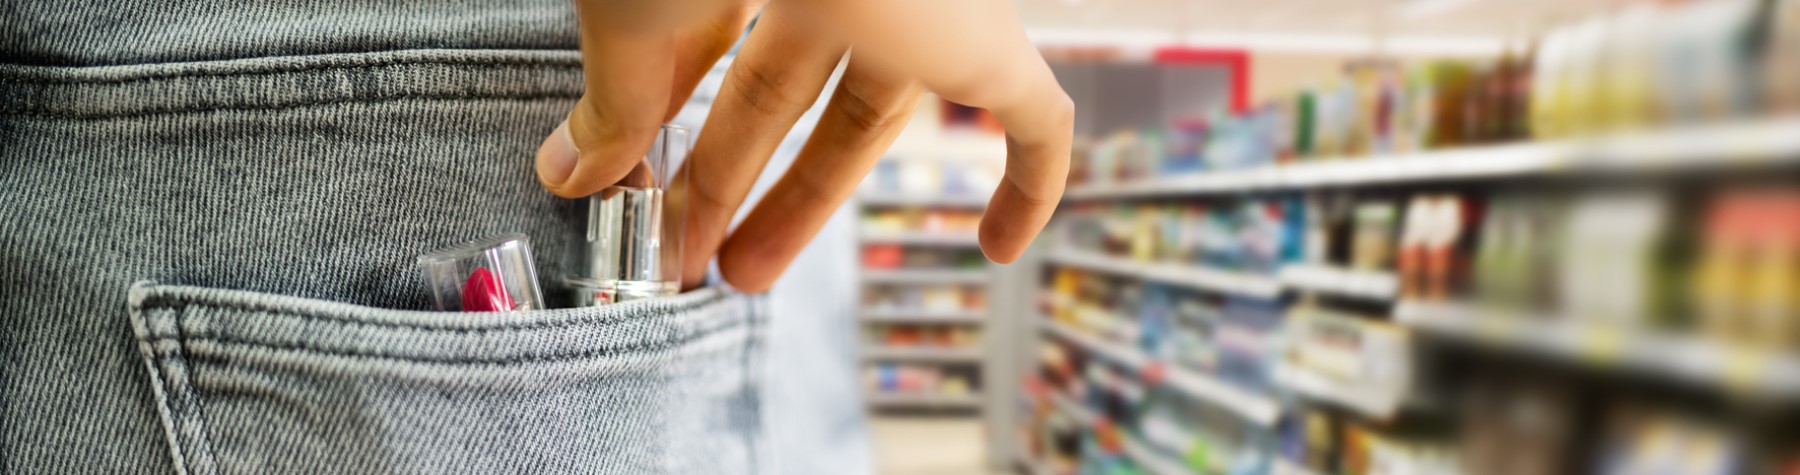 Steigende Zahl an Ladendiebstählen: Security im Einzelhandel verstärken